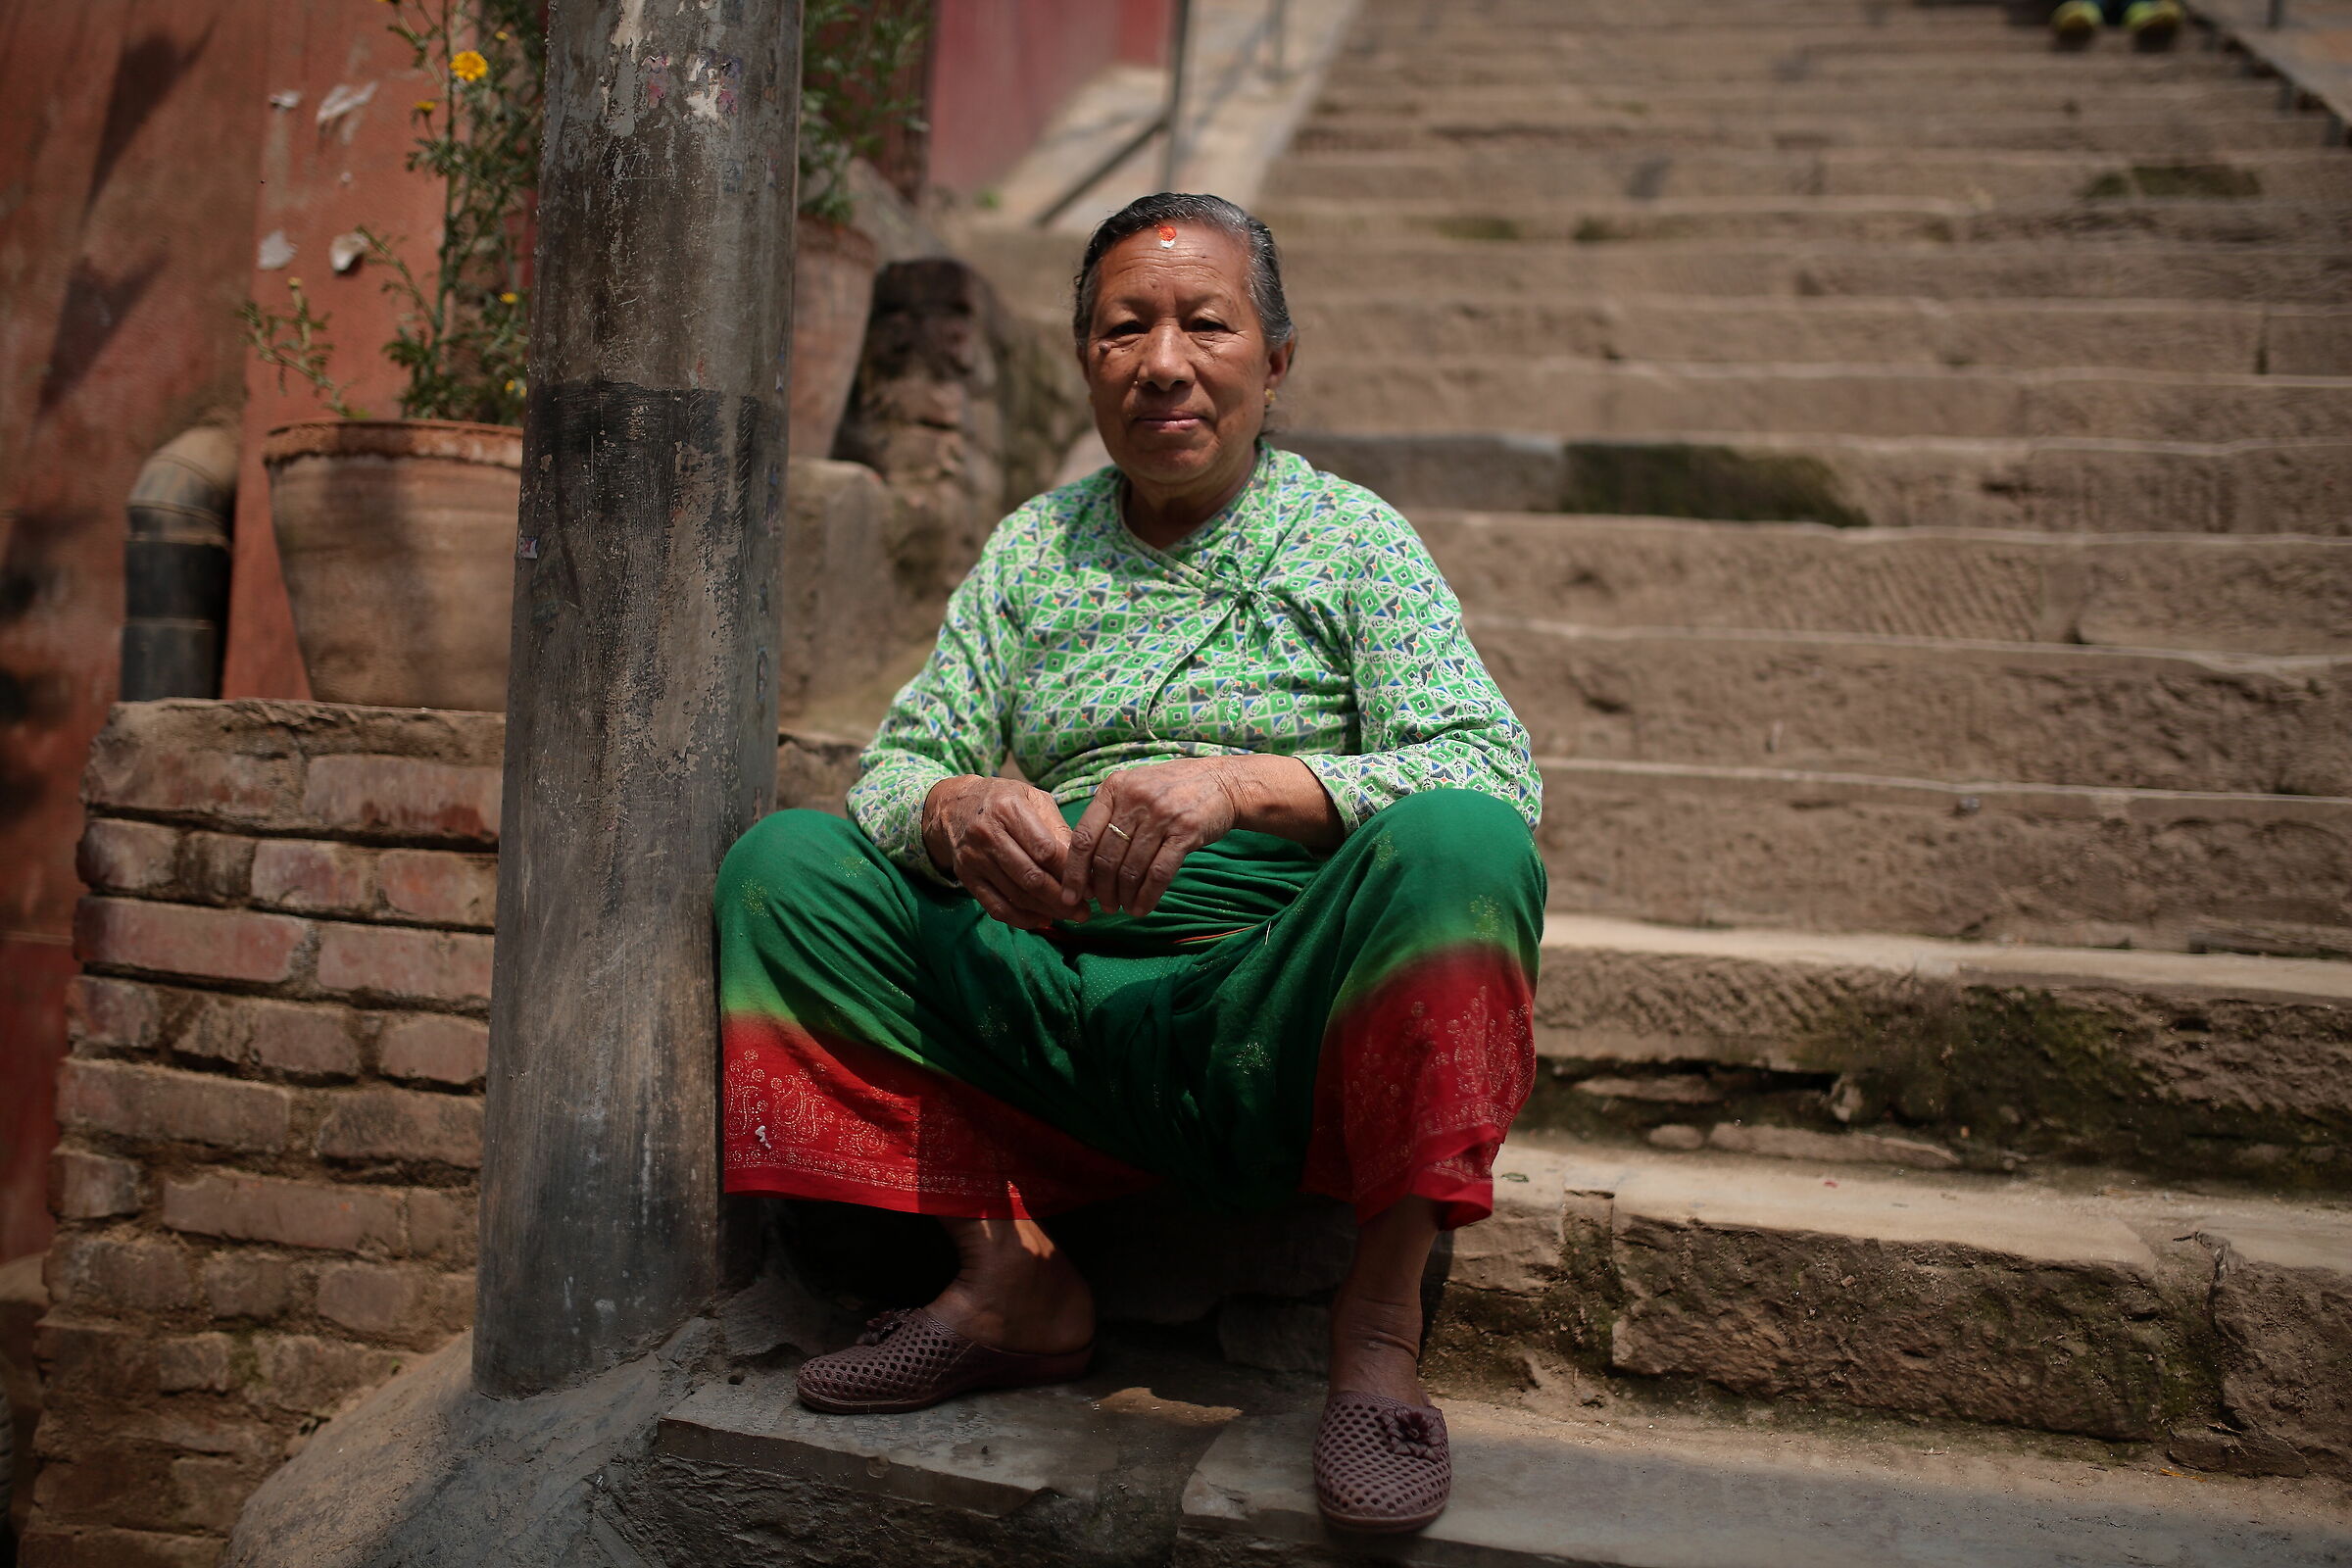 I magnifici colori degli abiti nepalesi...